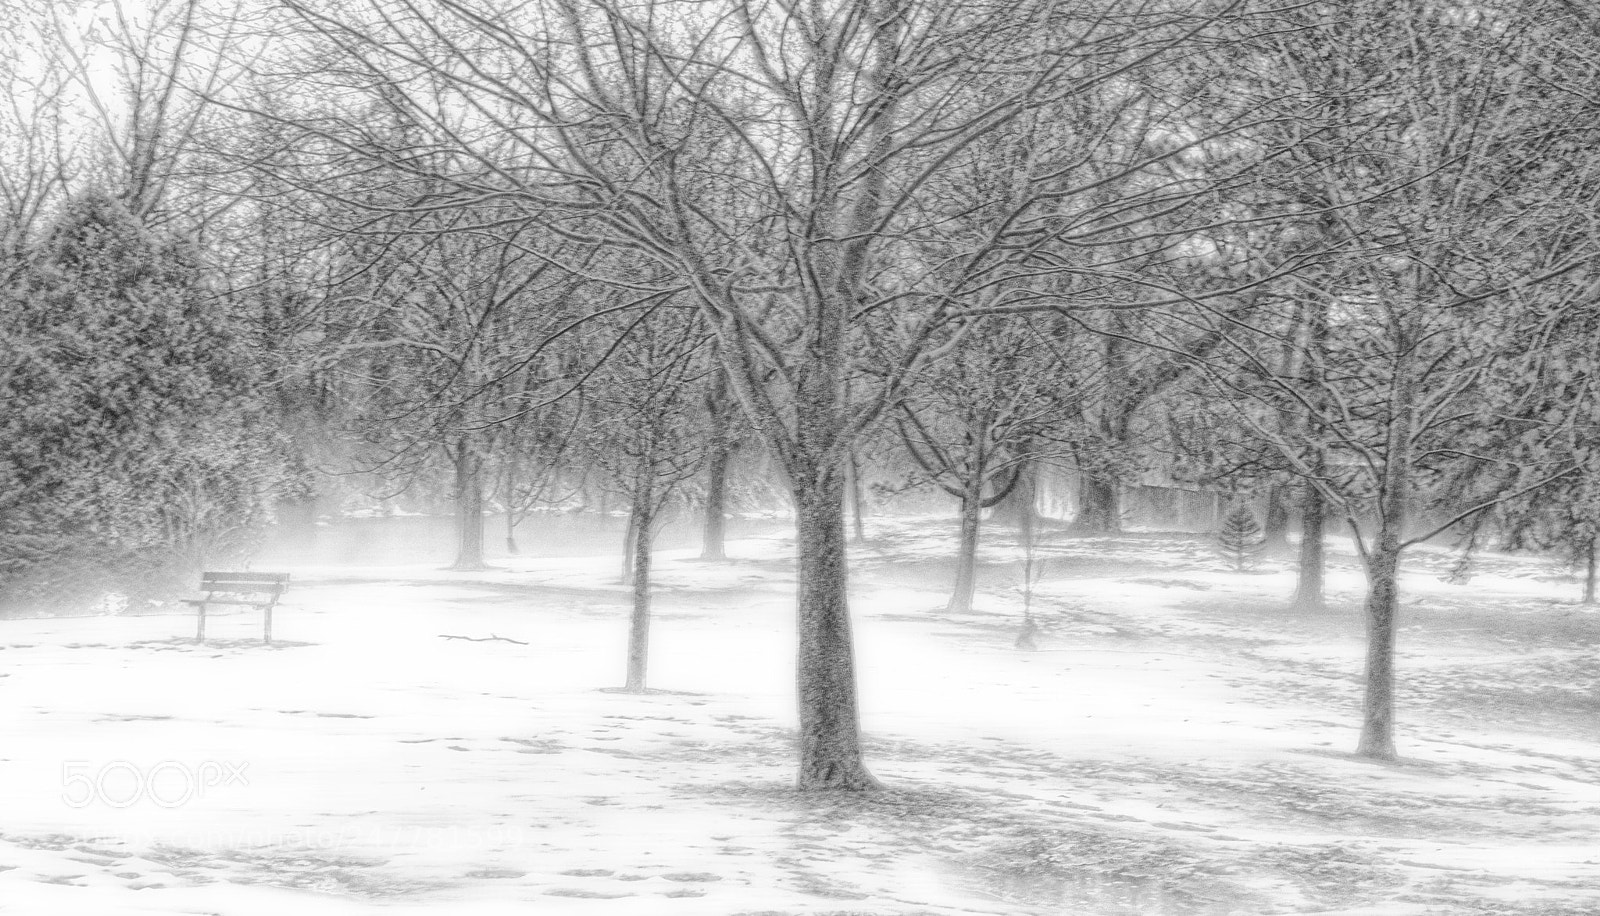 Nikon D3300 sample photo. Snowy mist photography